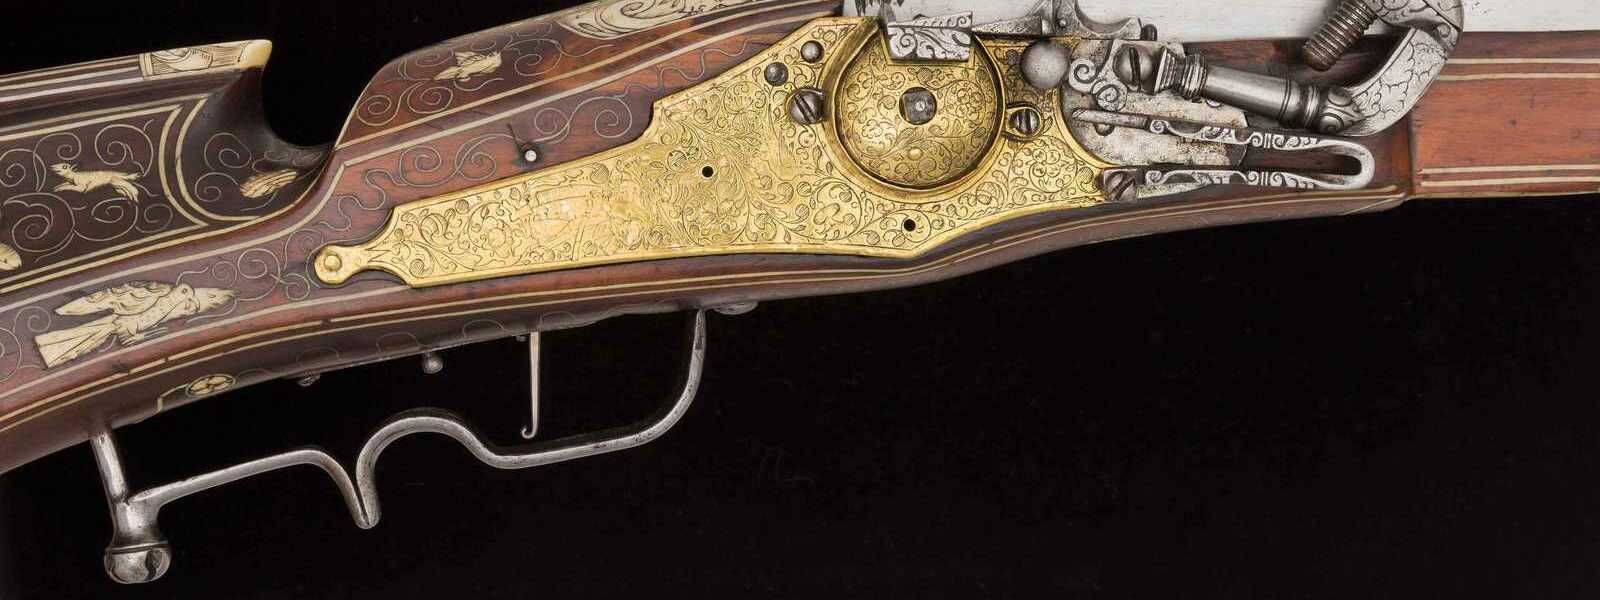 Radschlossgewehr mit Adelswappen, deutsch datiert 1604